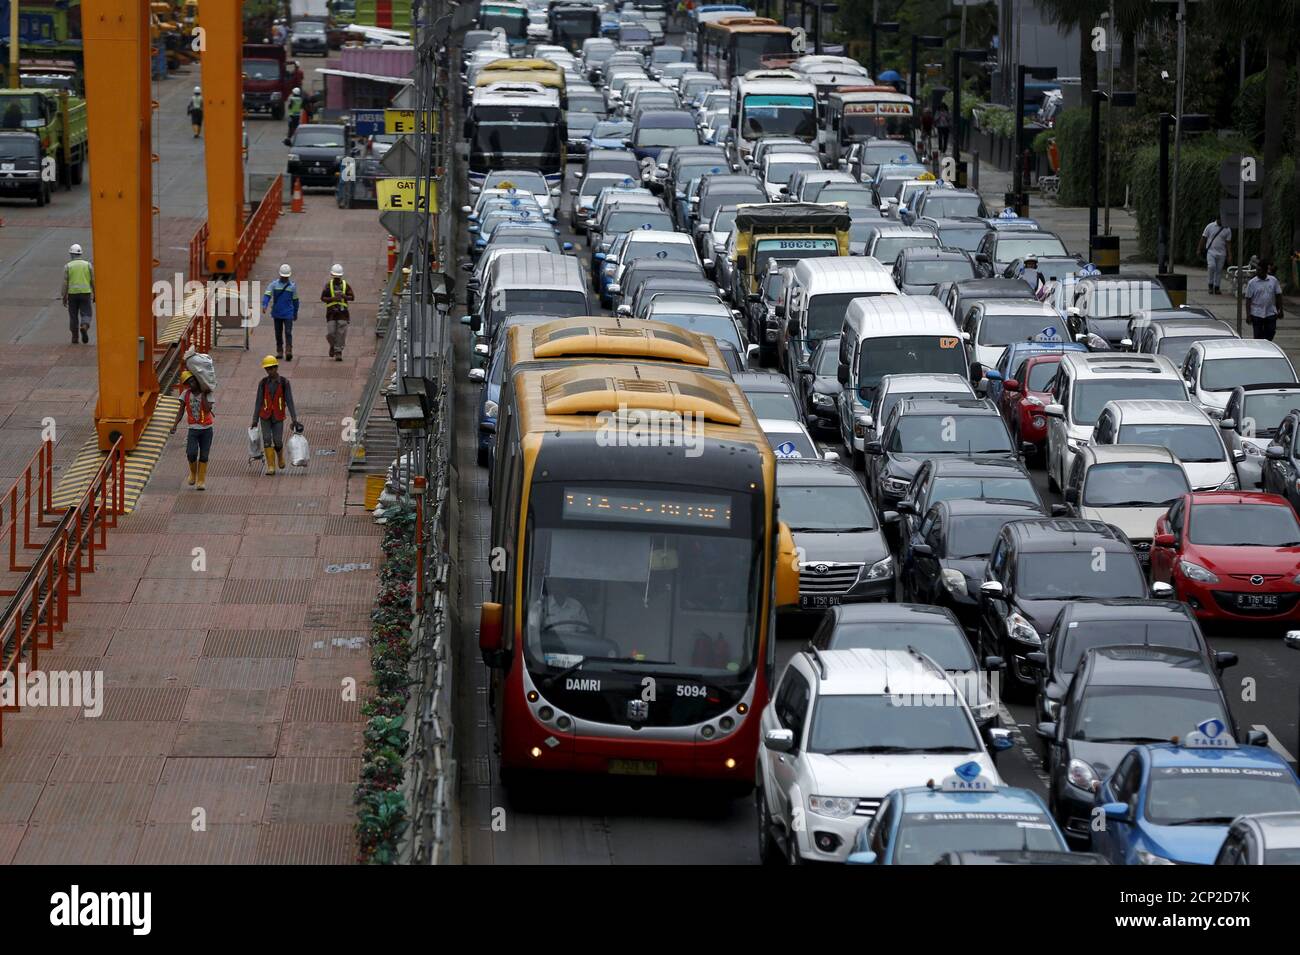 Bang bus in Jakarta